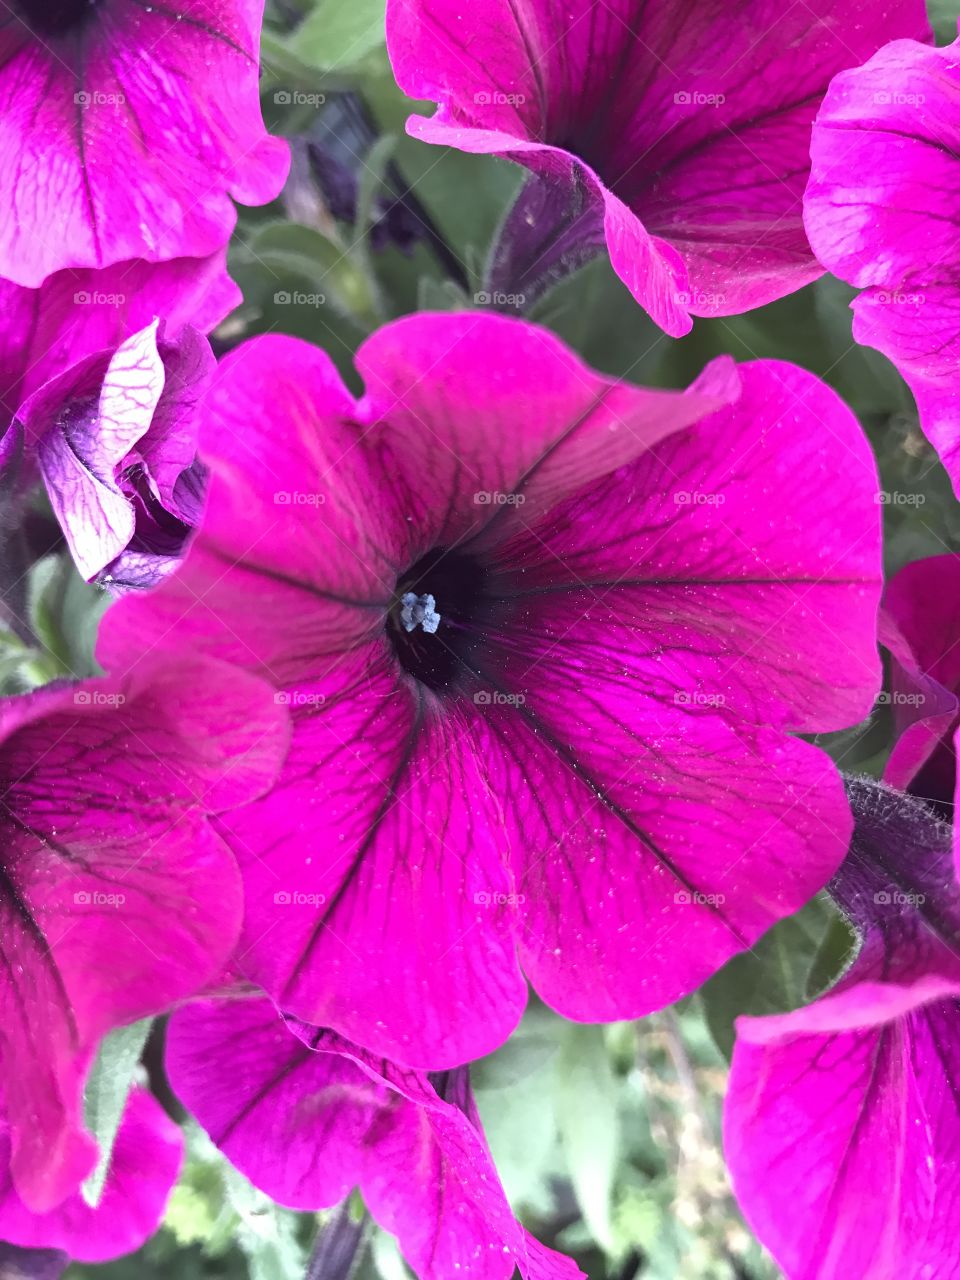 A beautiful flower in full bloom